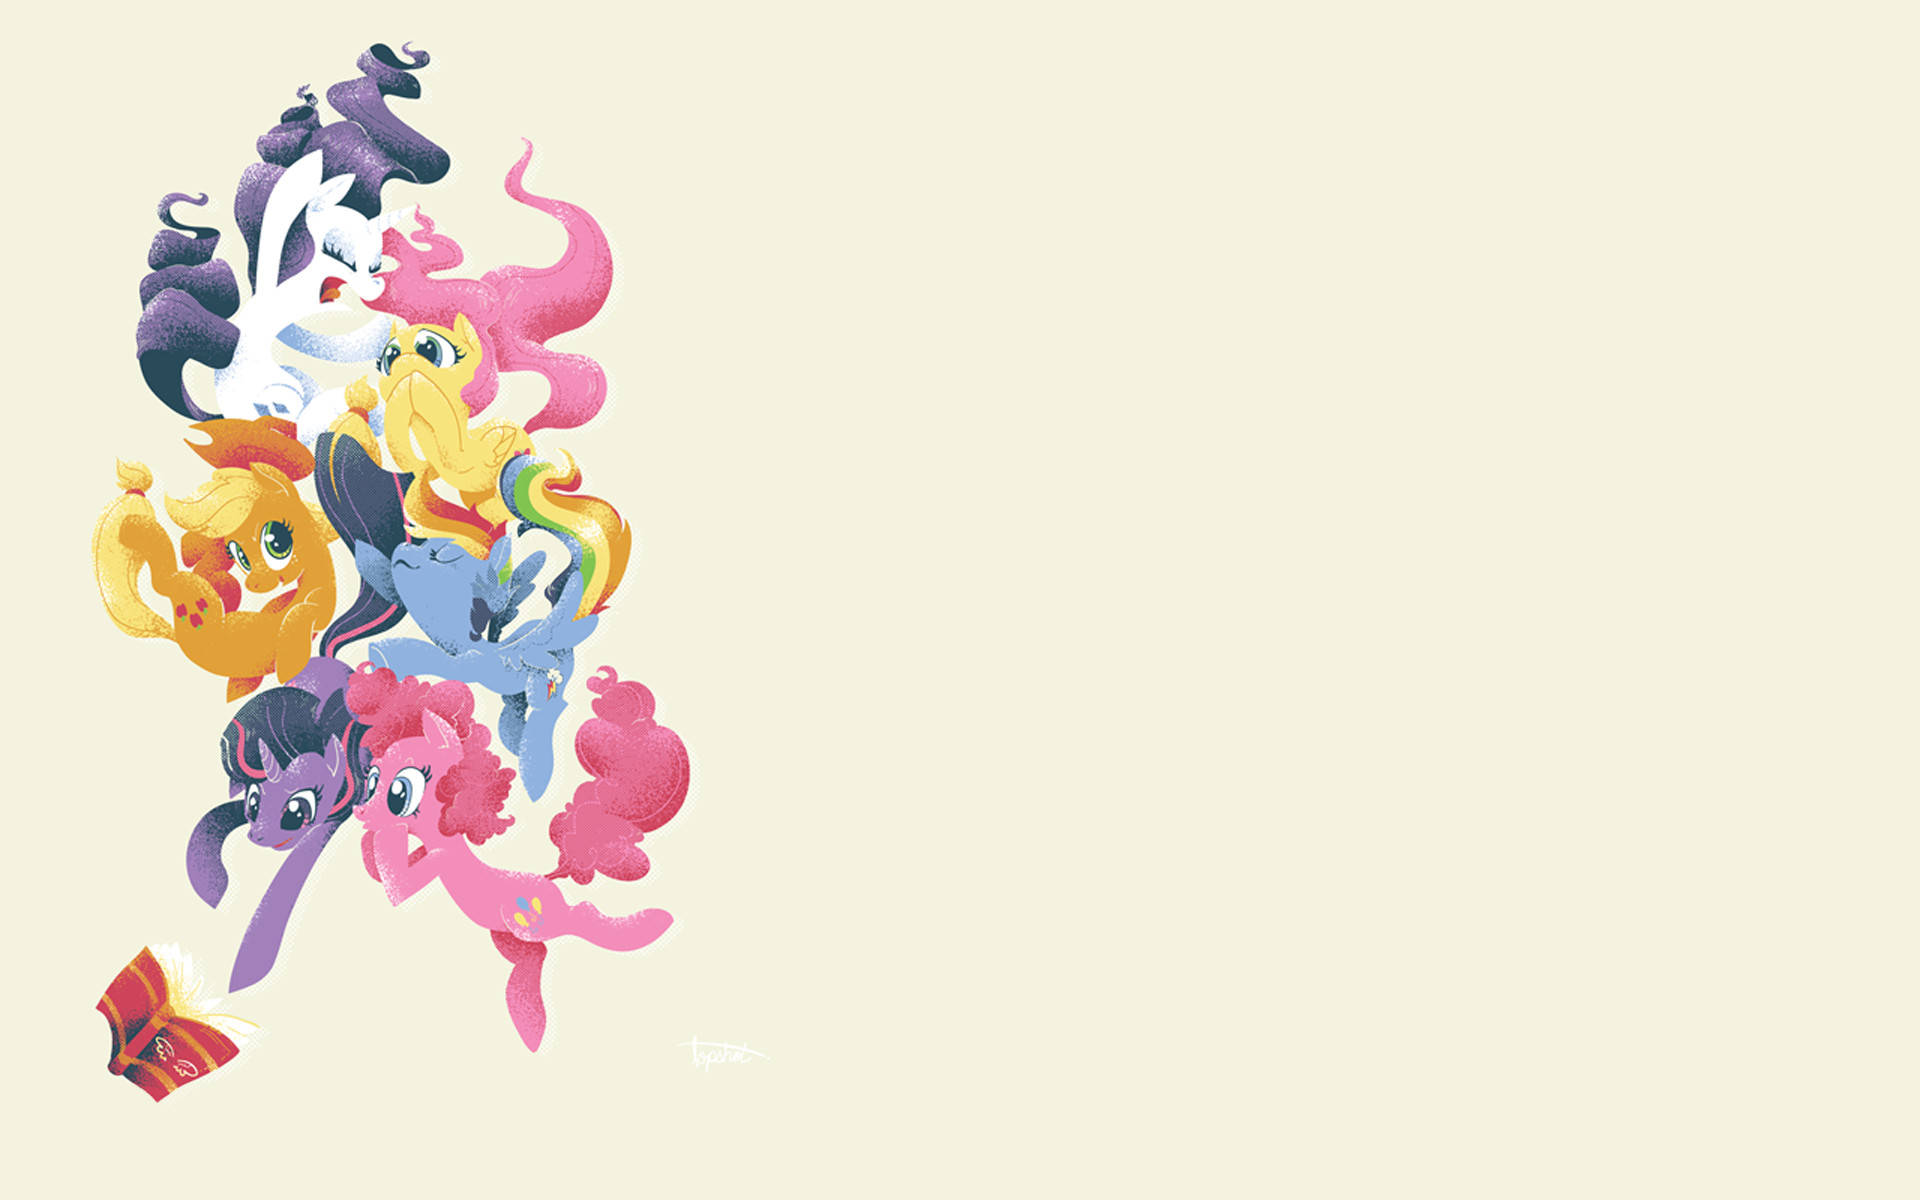 Erhellensie Ihren Desktop Mit Farbenfrohen My Little Pony Hintergrundbildern. Wallpaper